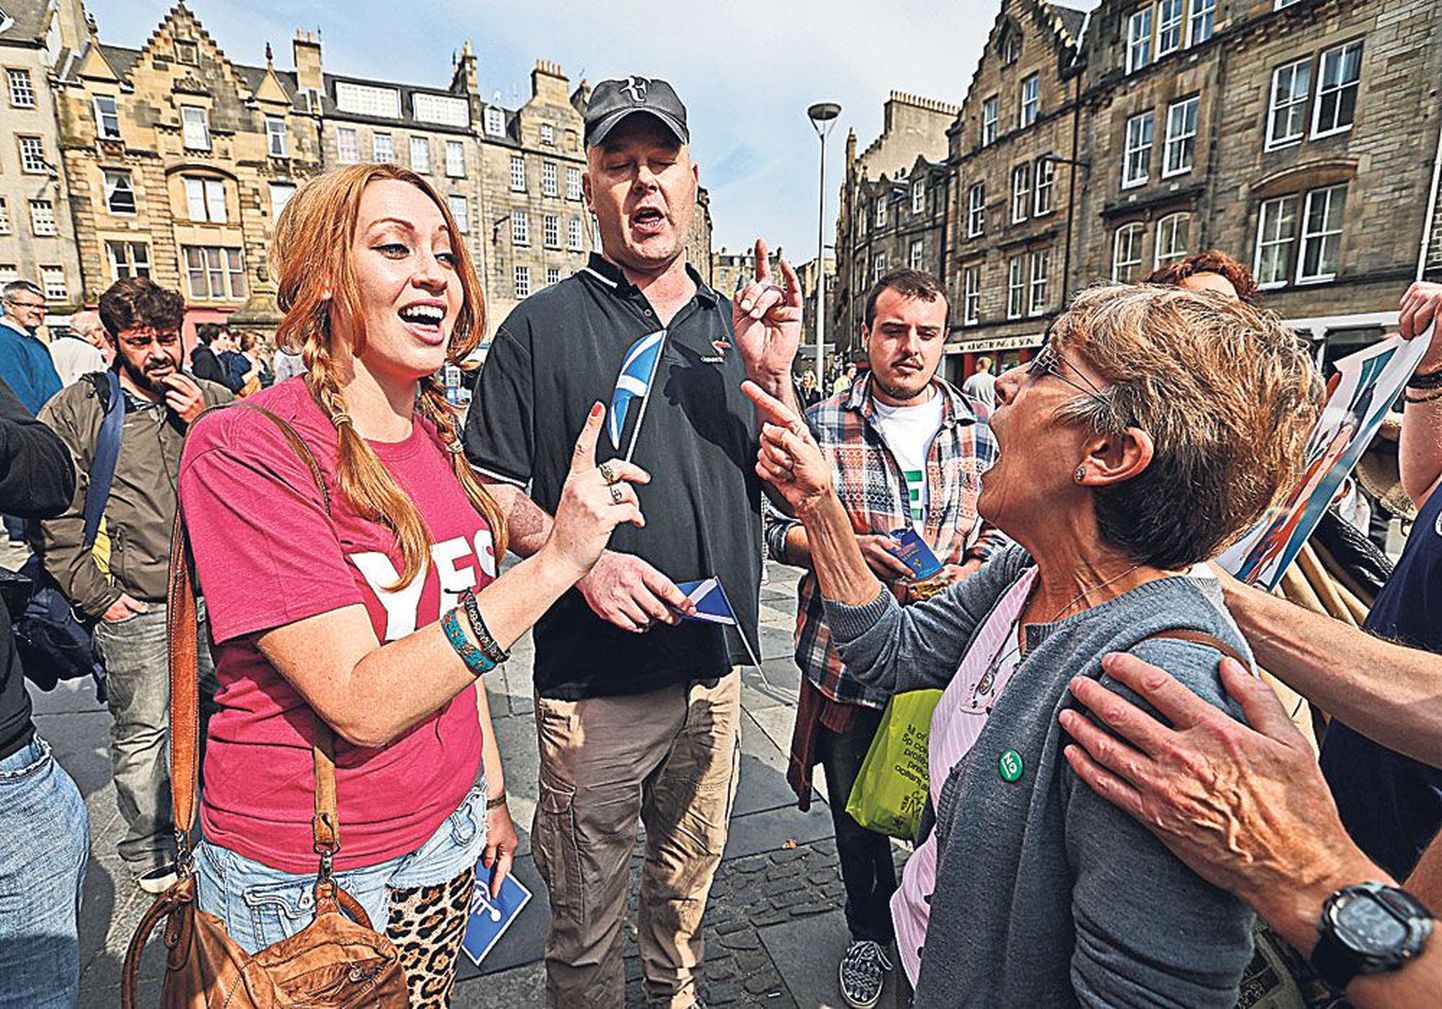 Шотландия, Эдинбург: и у сторонников, и у противников независимости есть свои аргументы.